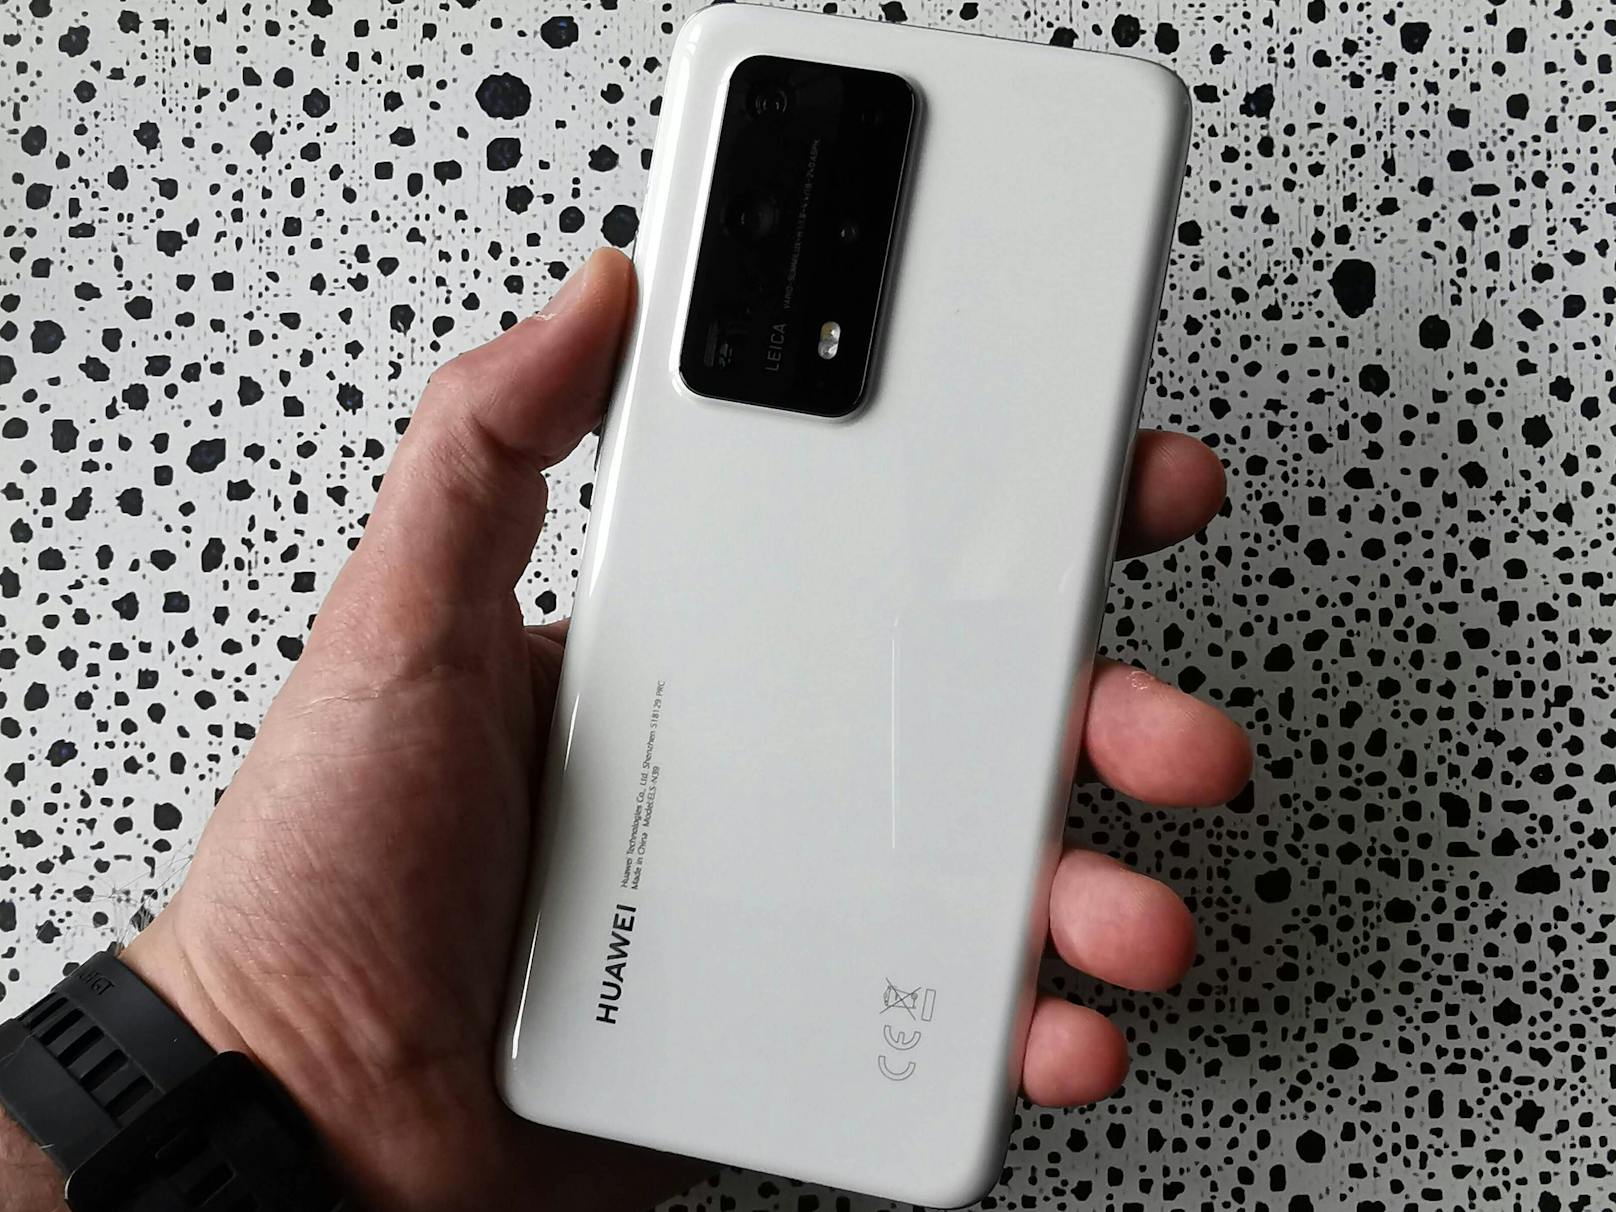 Wer dachte, <a href="https://www.heute.at/s/das-kann-die-kamera-des-huawei-p40-pro-wirklich-100082745">mit dem Huawei P40 Pro ist schon der Gipfel der Smartphone-Fotografie bei den neuen Huawei-Geräten erreicht</a>, den wird das neue Huawei P40 Pro+ überraschen.